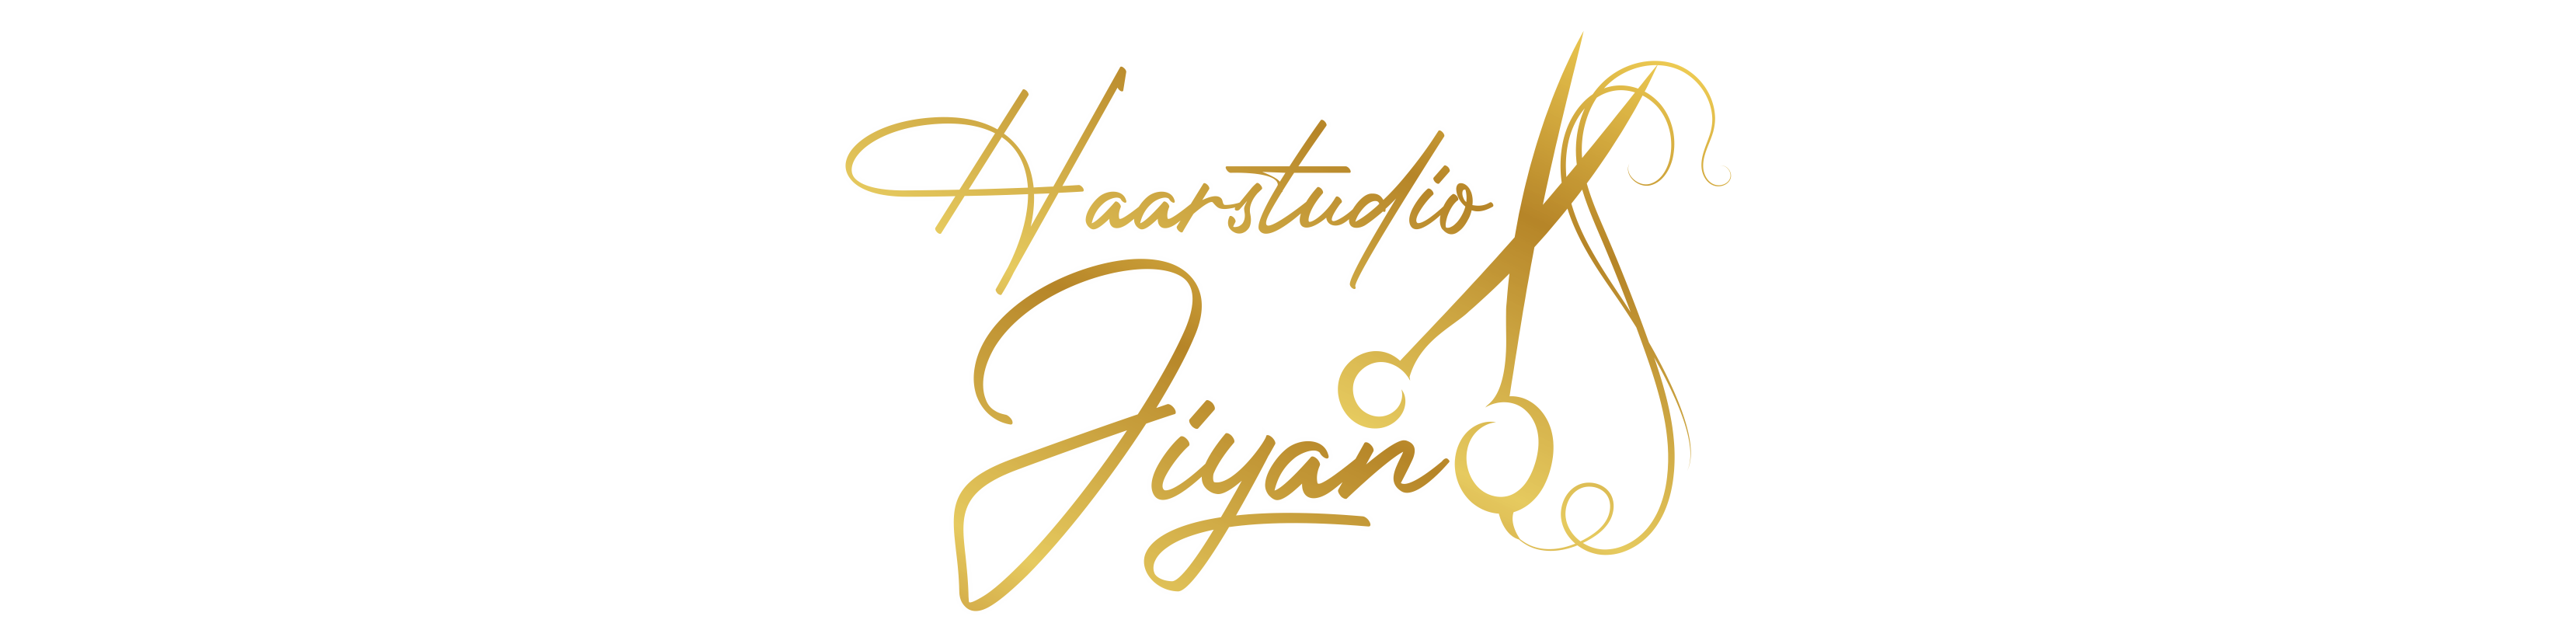 Haarstudio Jiyan logo